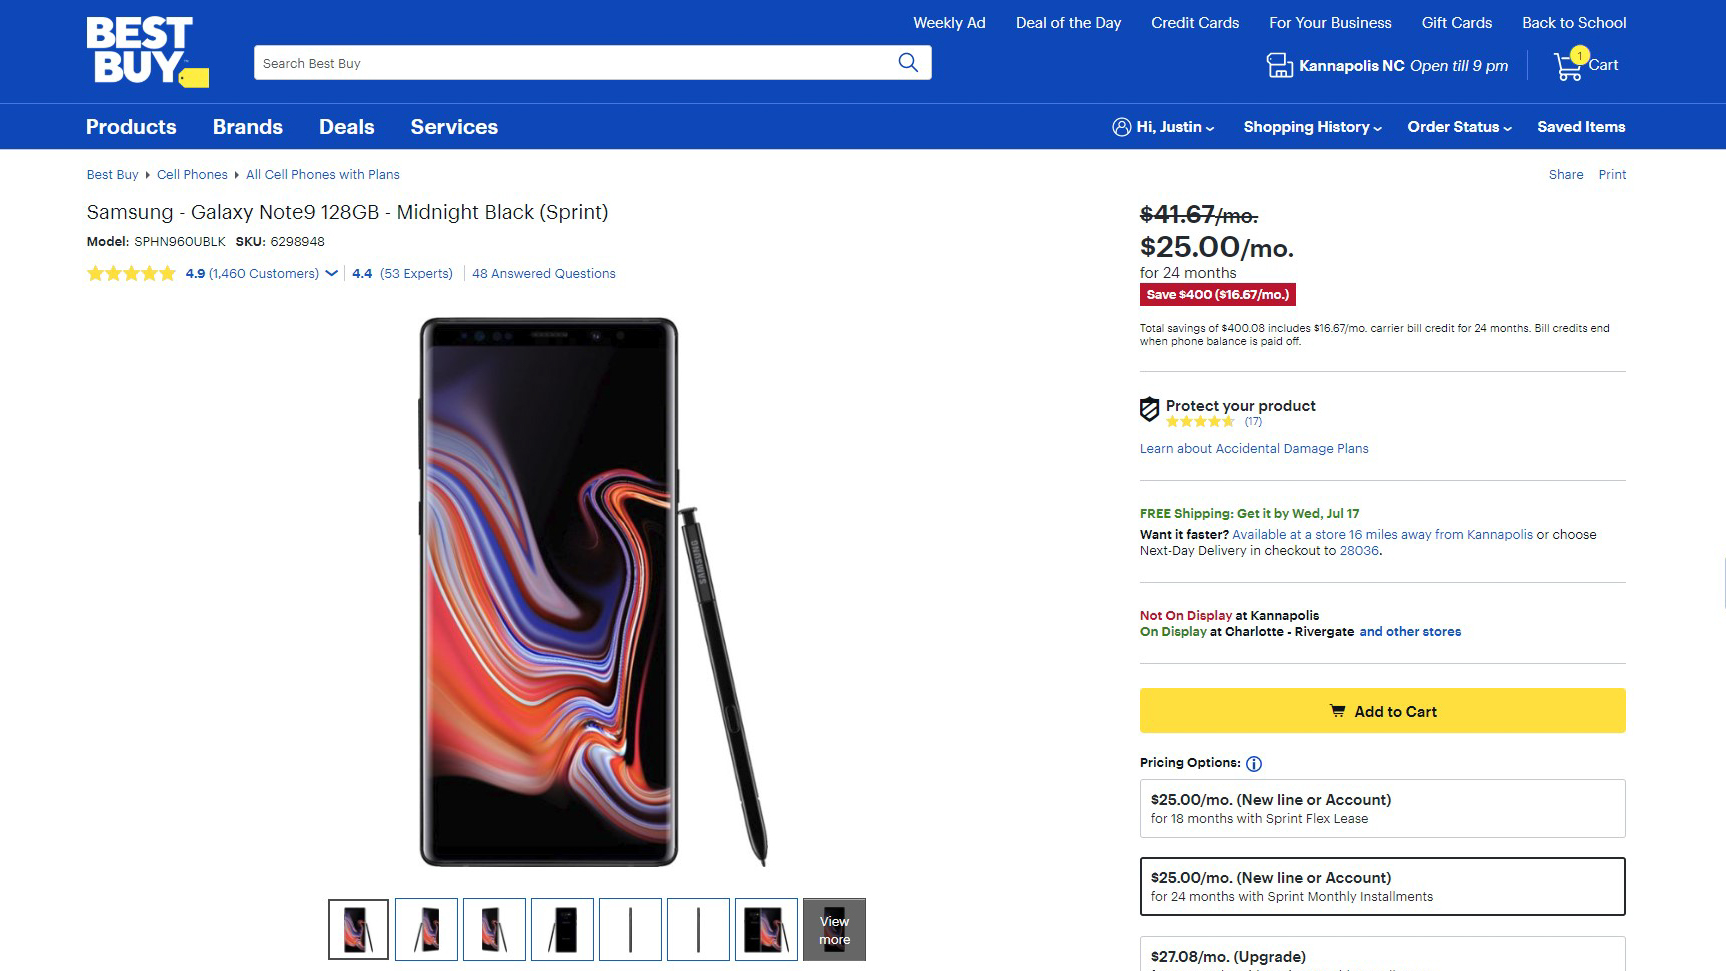 Samsung Galaxy Note 9 Best Buy Sale